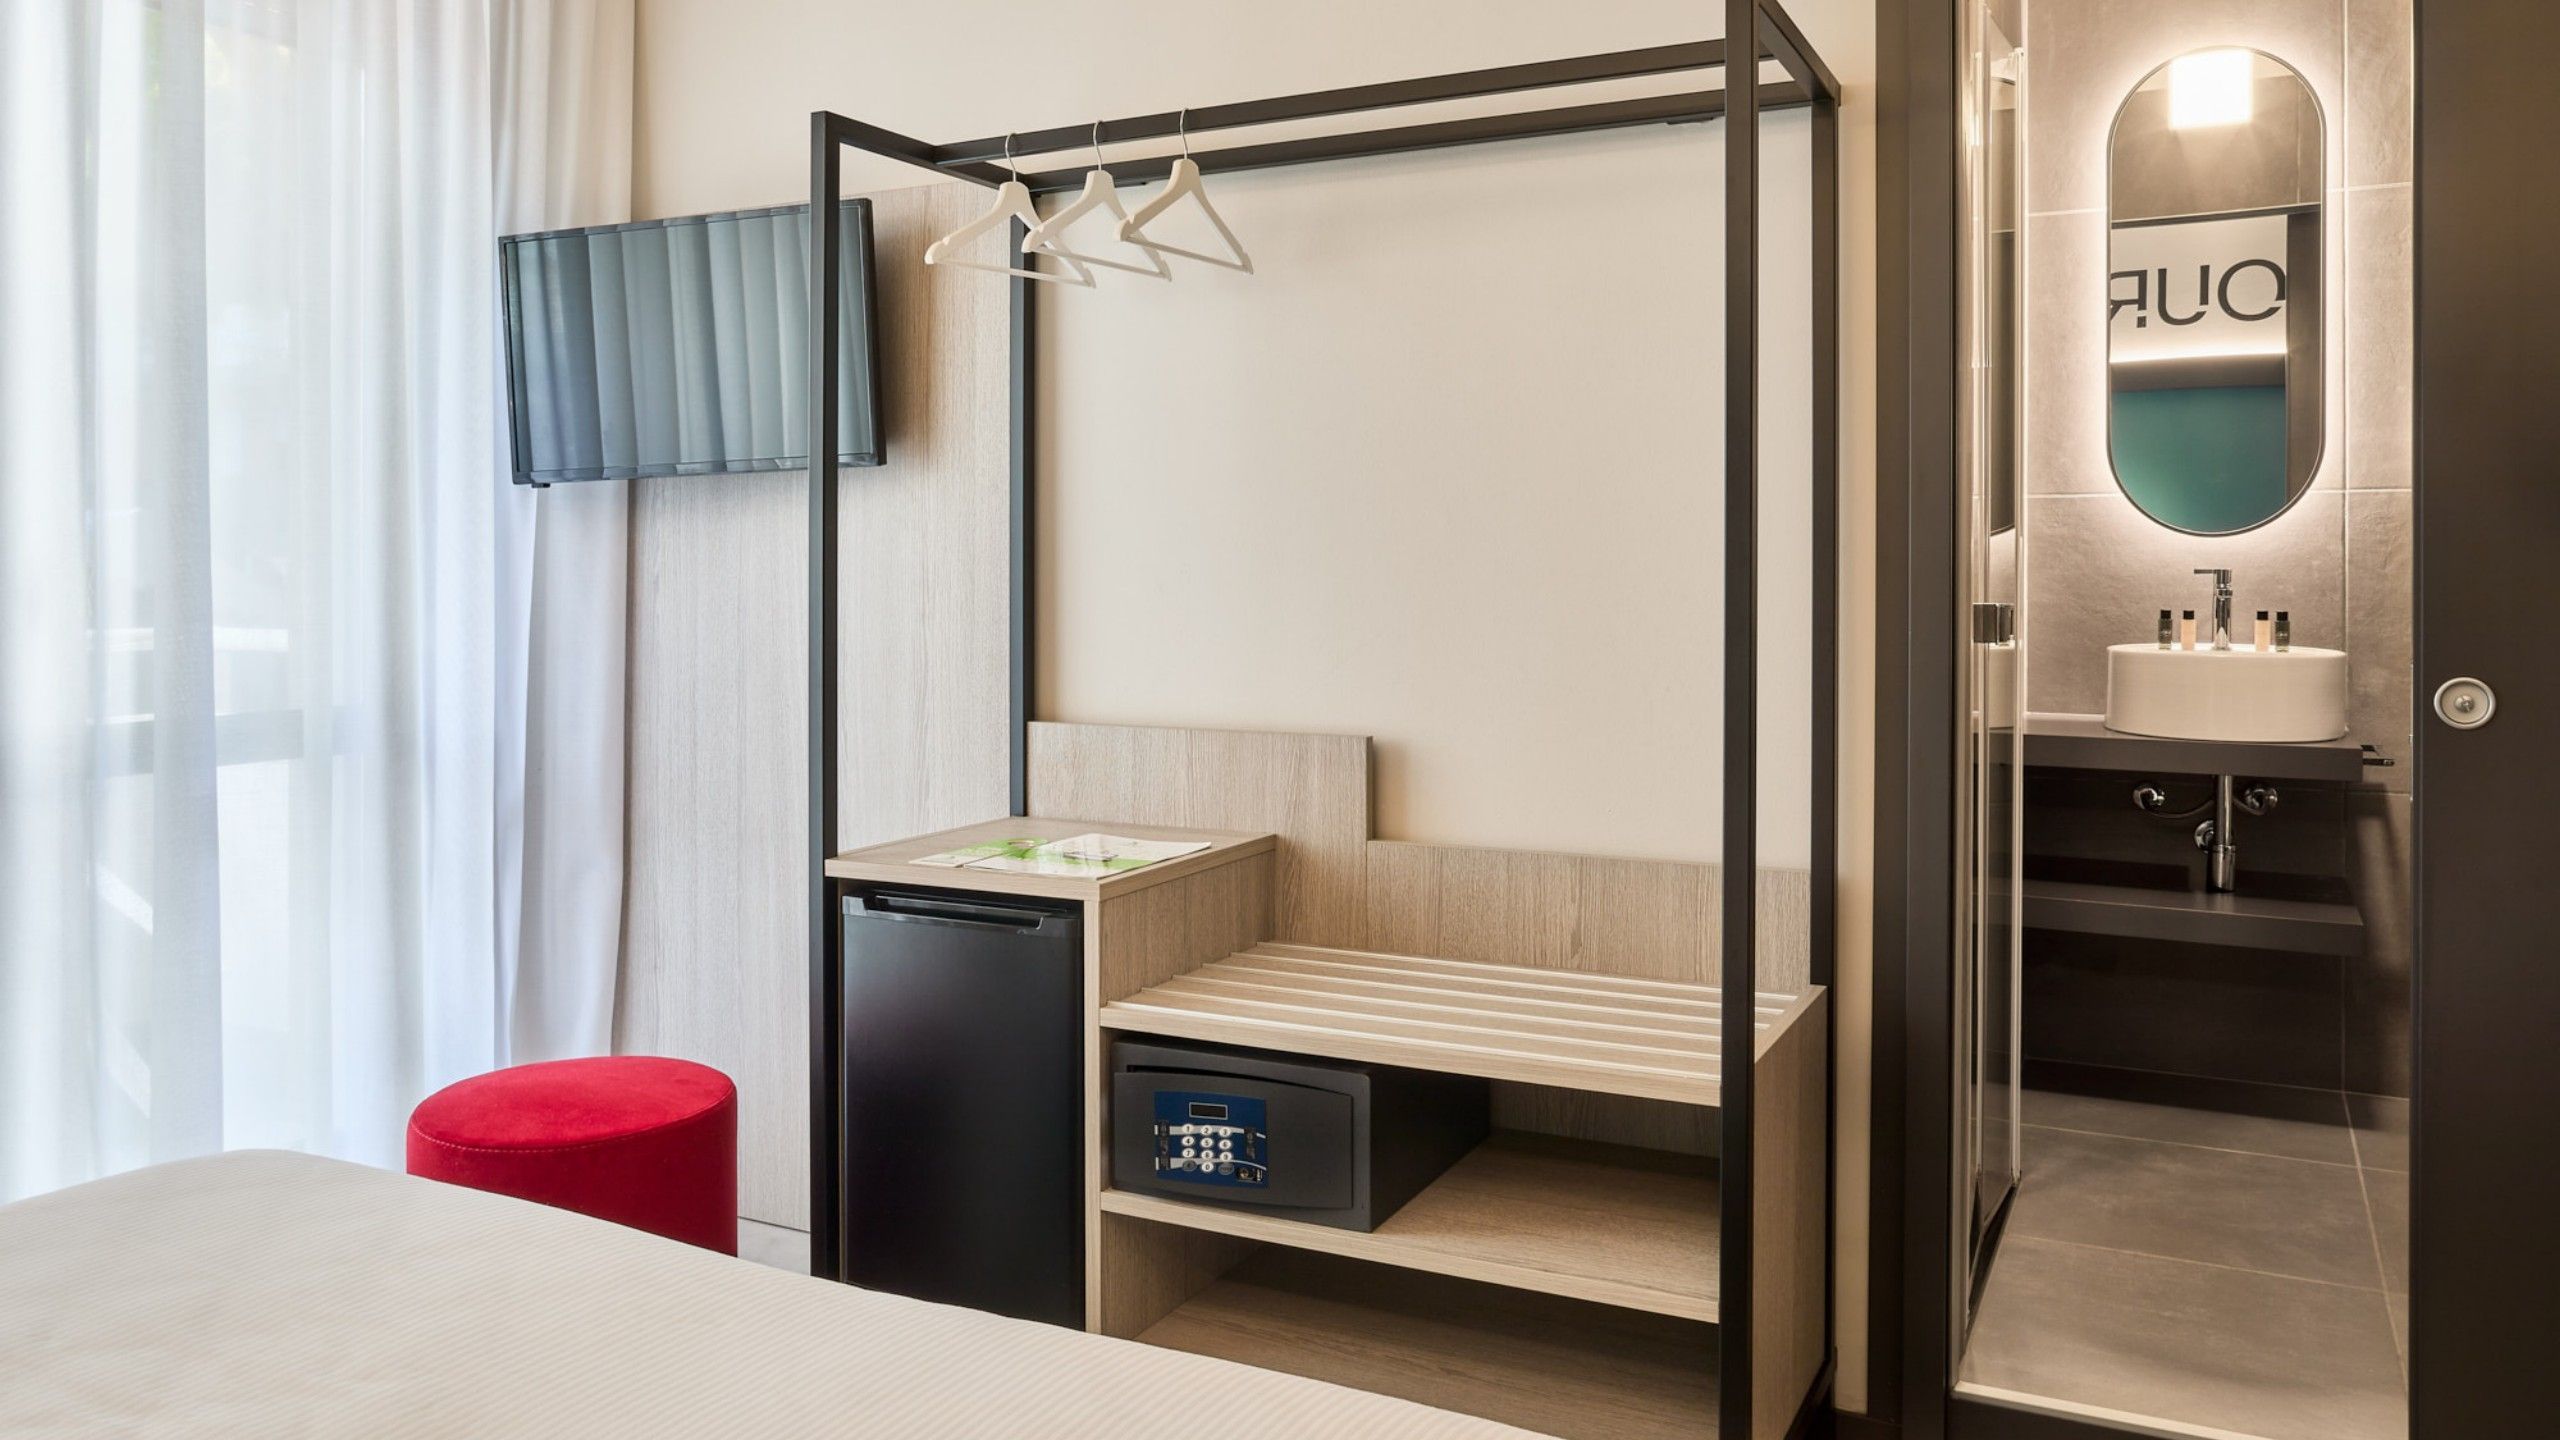 3-star hotel Lido di Jesolo | Hotel Iris near the Sea Hotel Iris | Smart room